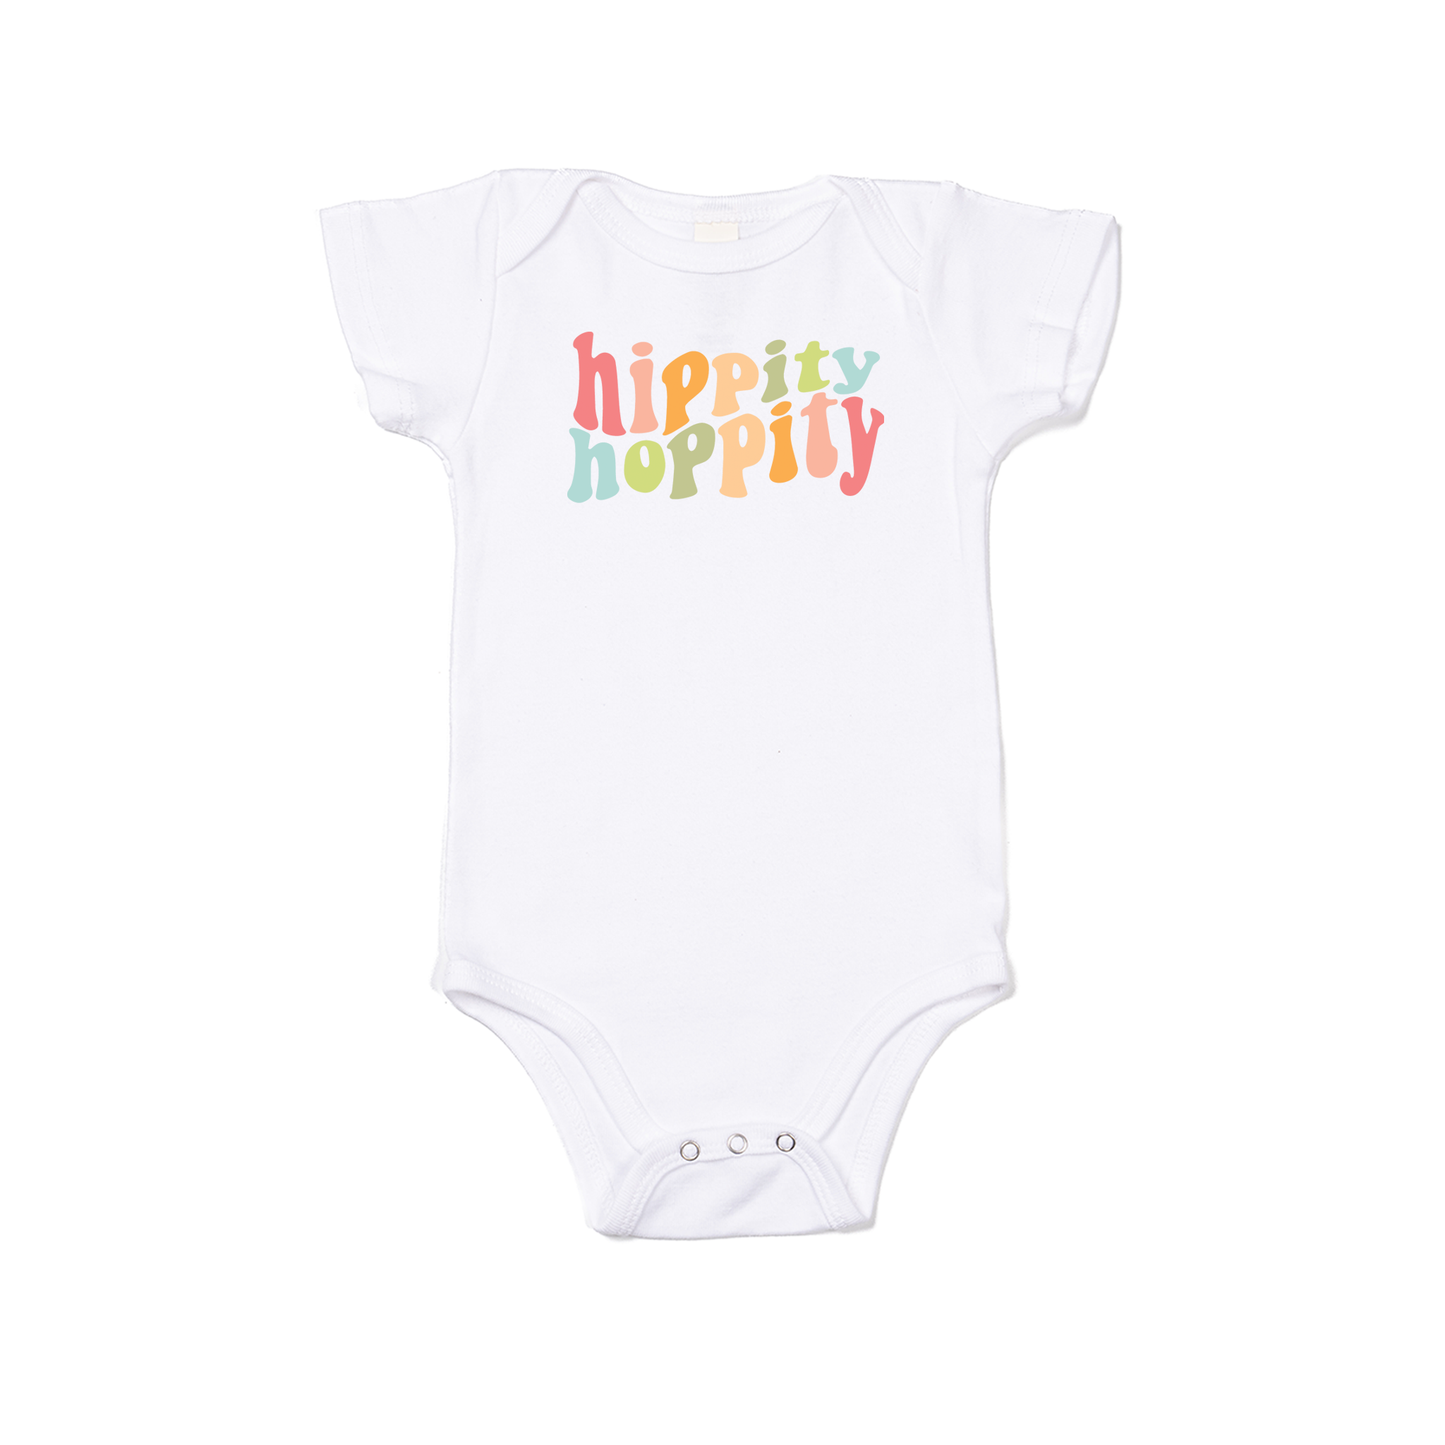 Hippity Hoppity - Bodysuit (White, Short Sleeve)